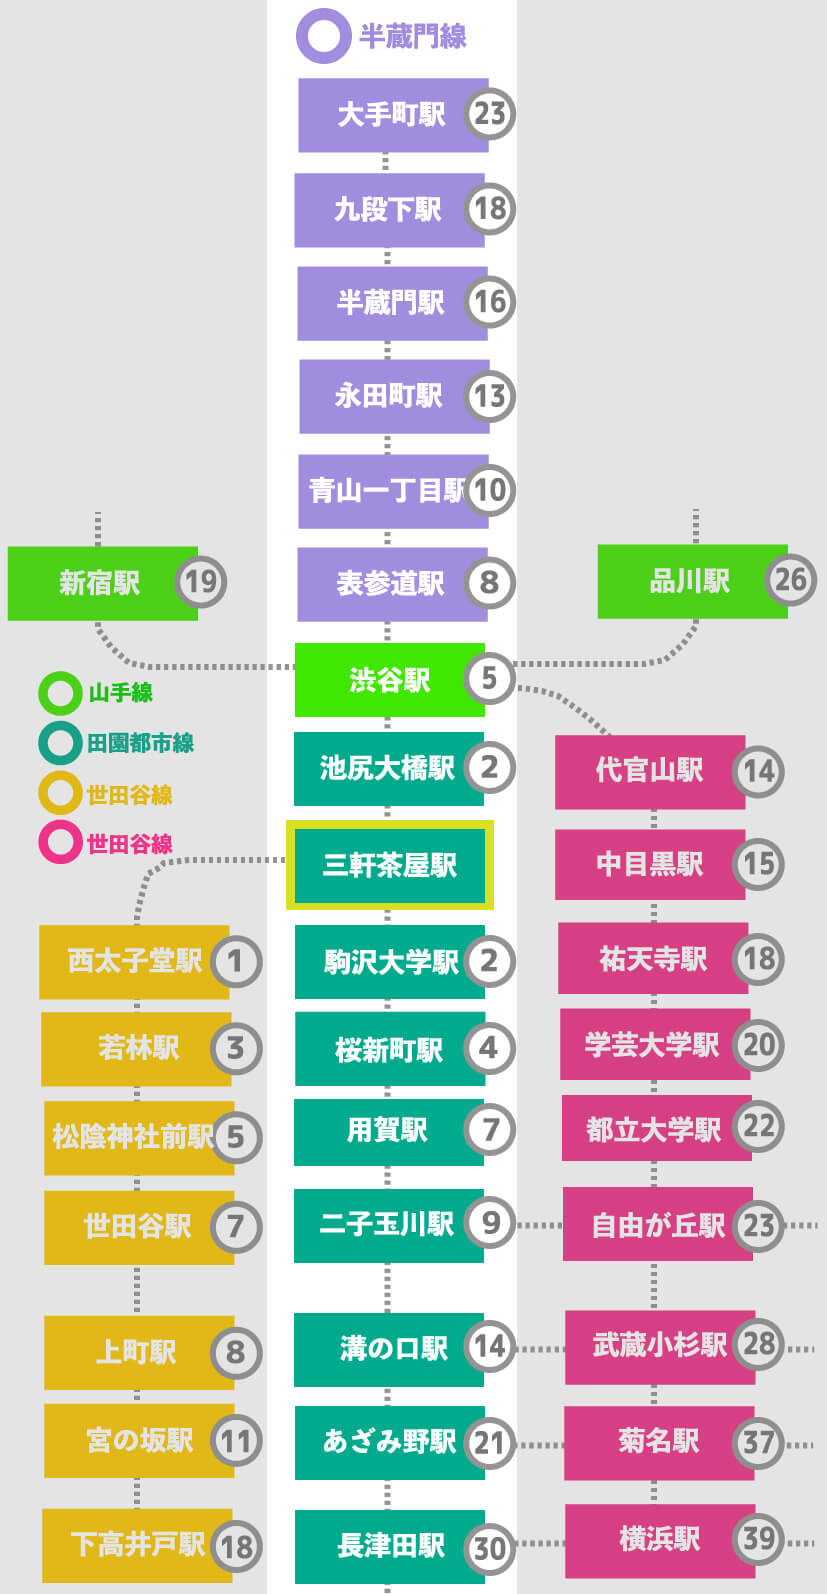 この画像は三軒茶屋から田園都市線各駅までの乗車時間、半蔵門線への乗車時間などをまとめた表です。